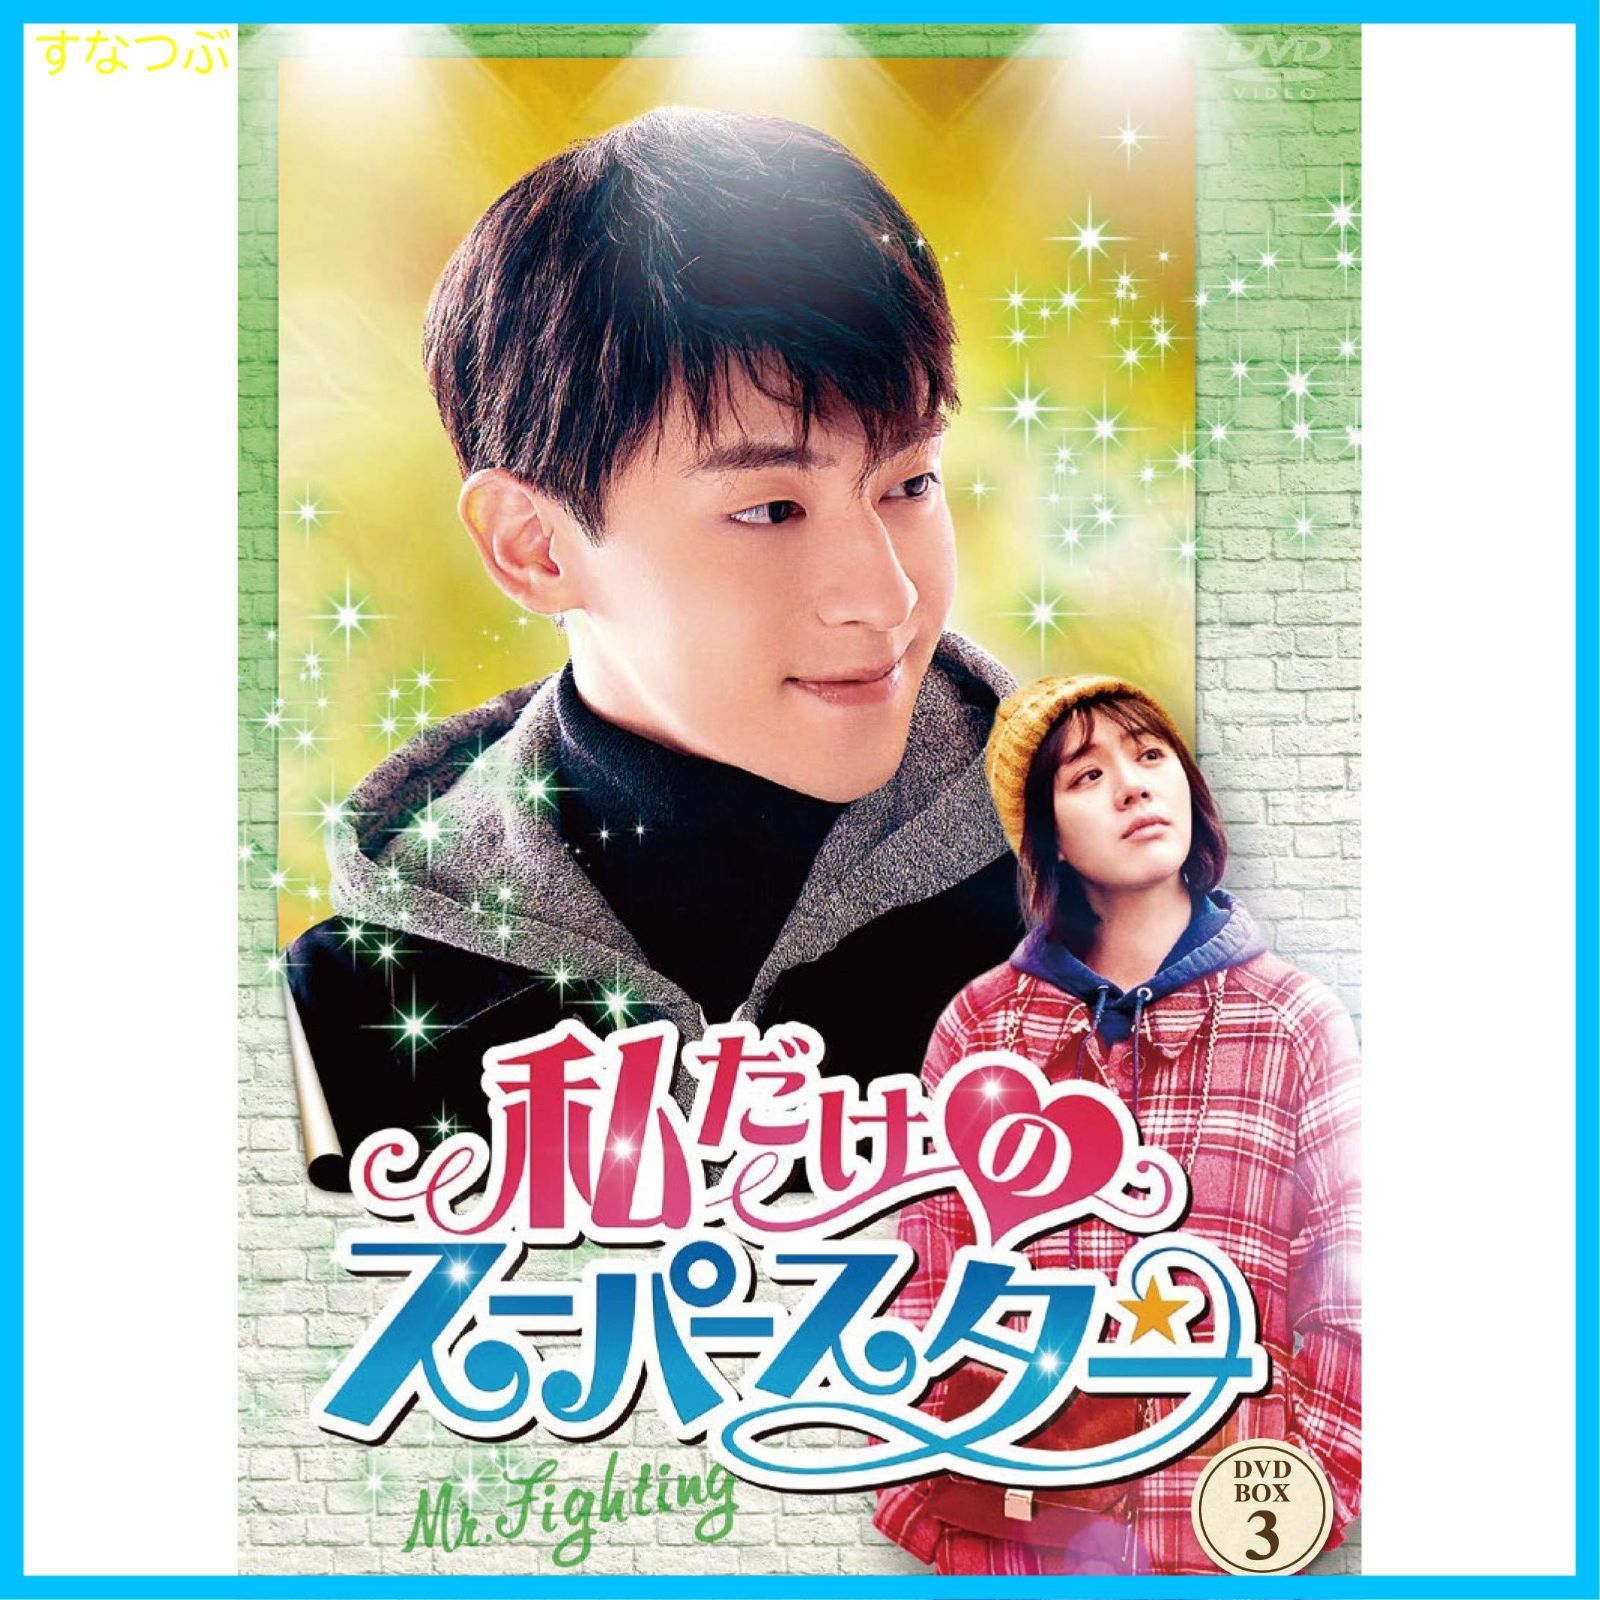 【新品未開封】私だけのスーパースター~Mr. Fighting~ DVD-BOX3 ダン・ルン (出演) マー・スーチュン (出演) u0026 1 その他  形式: DVD